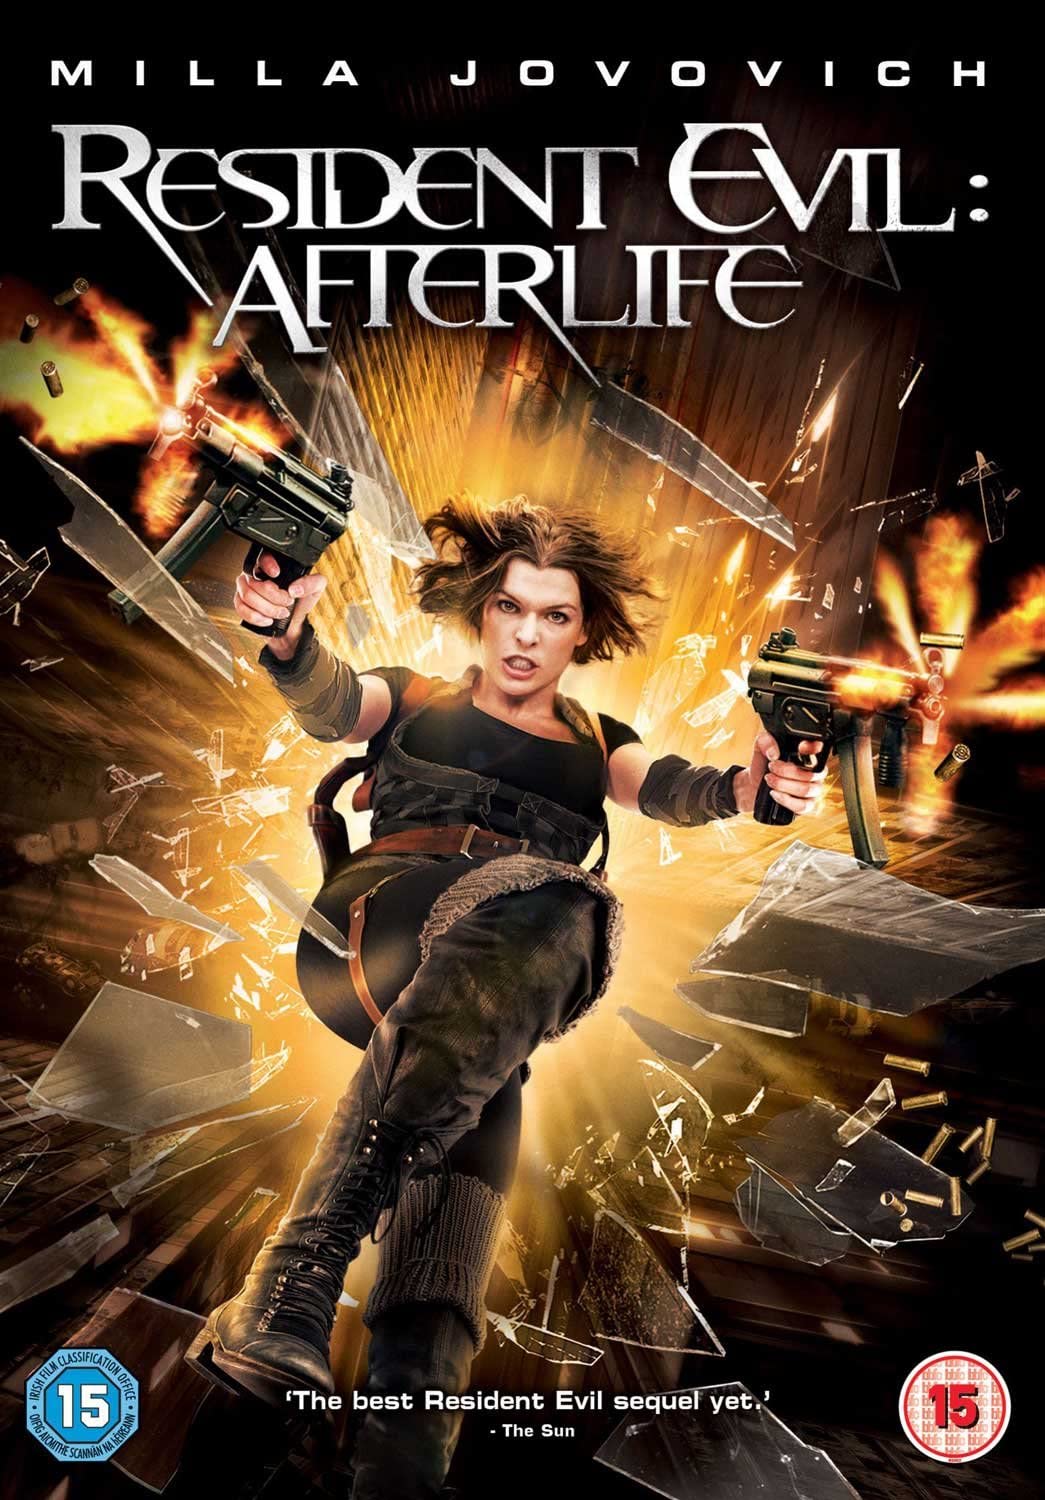 Resident Evil: Afterlife [2011] -  Action/Horror [DVD]